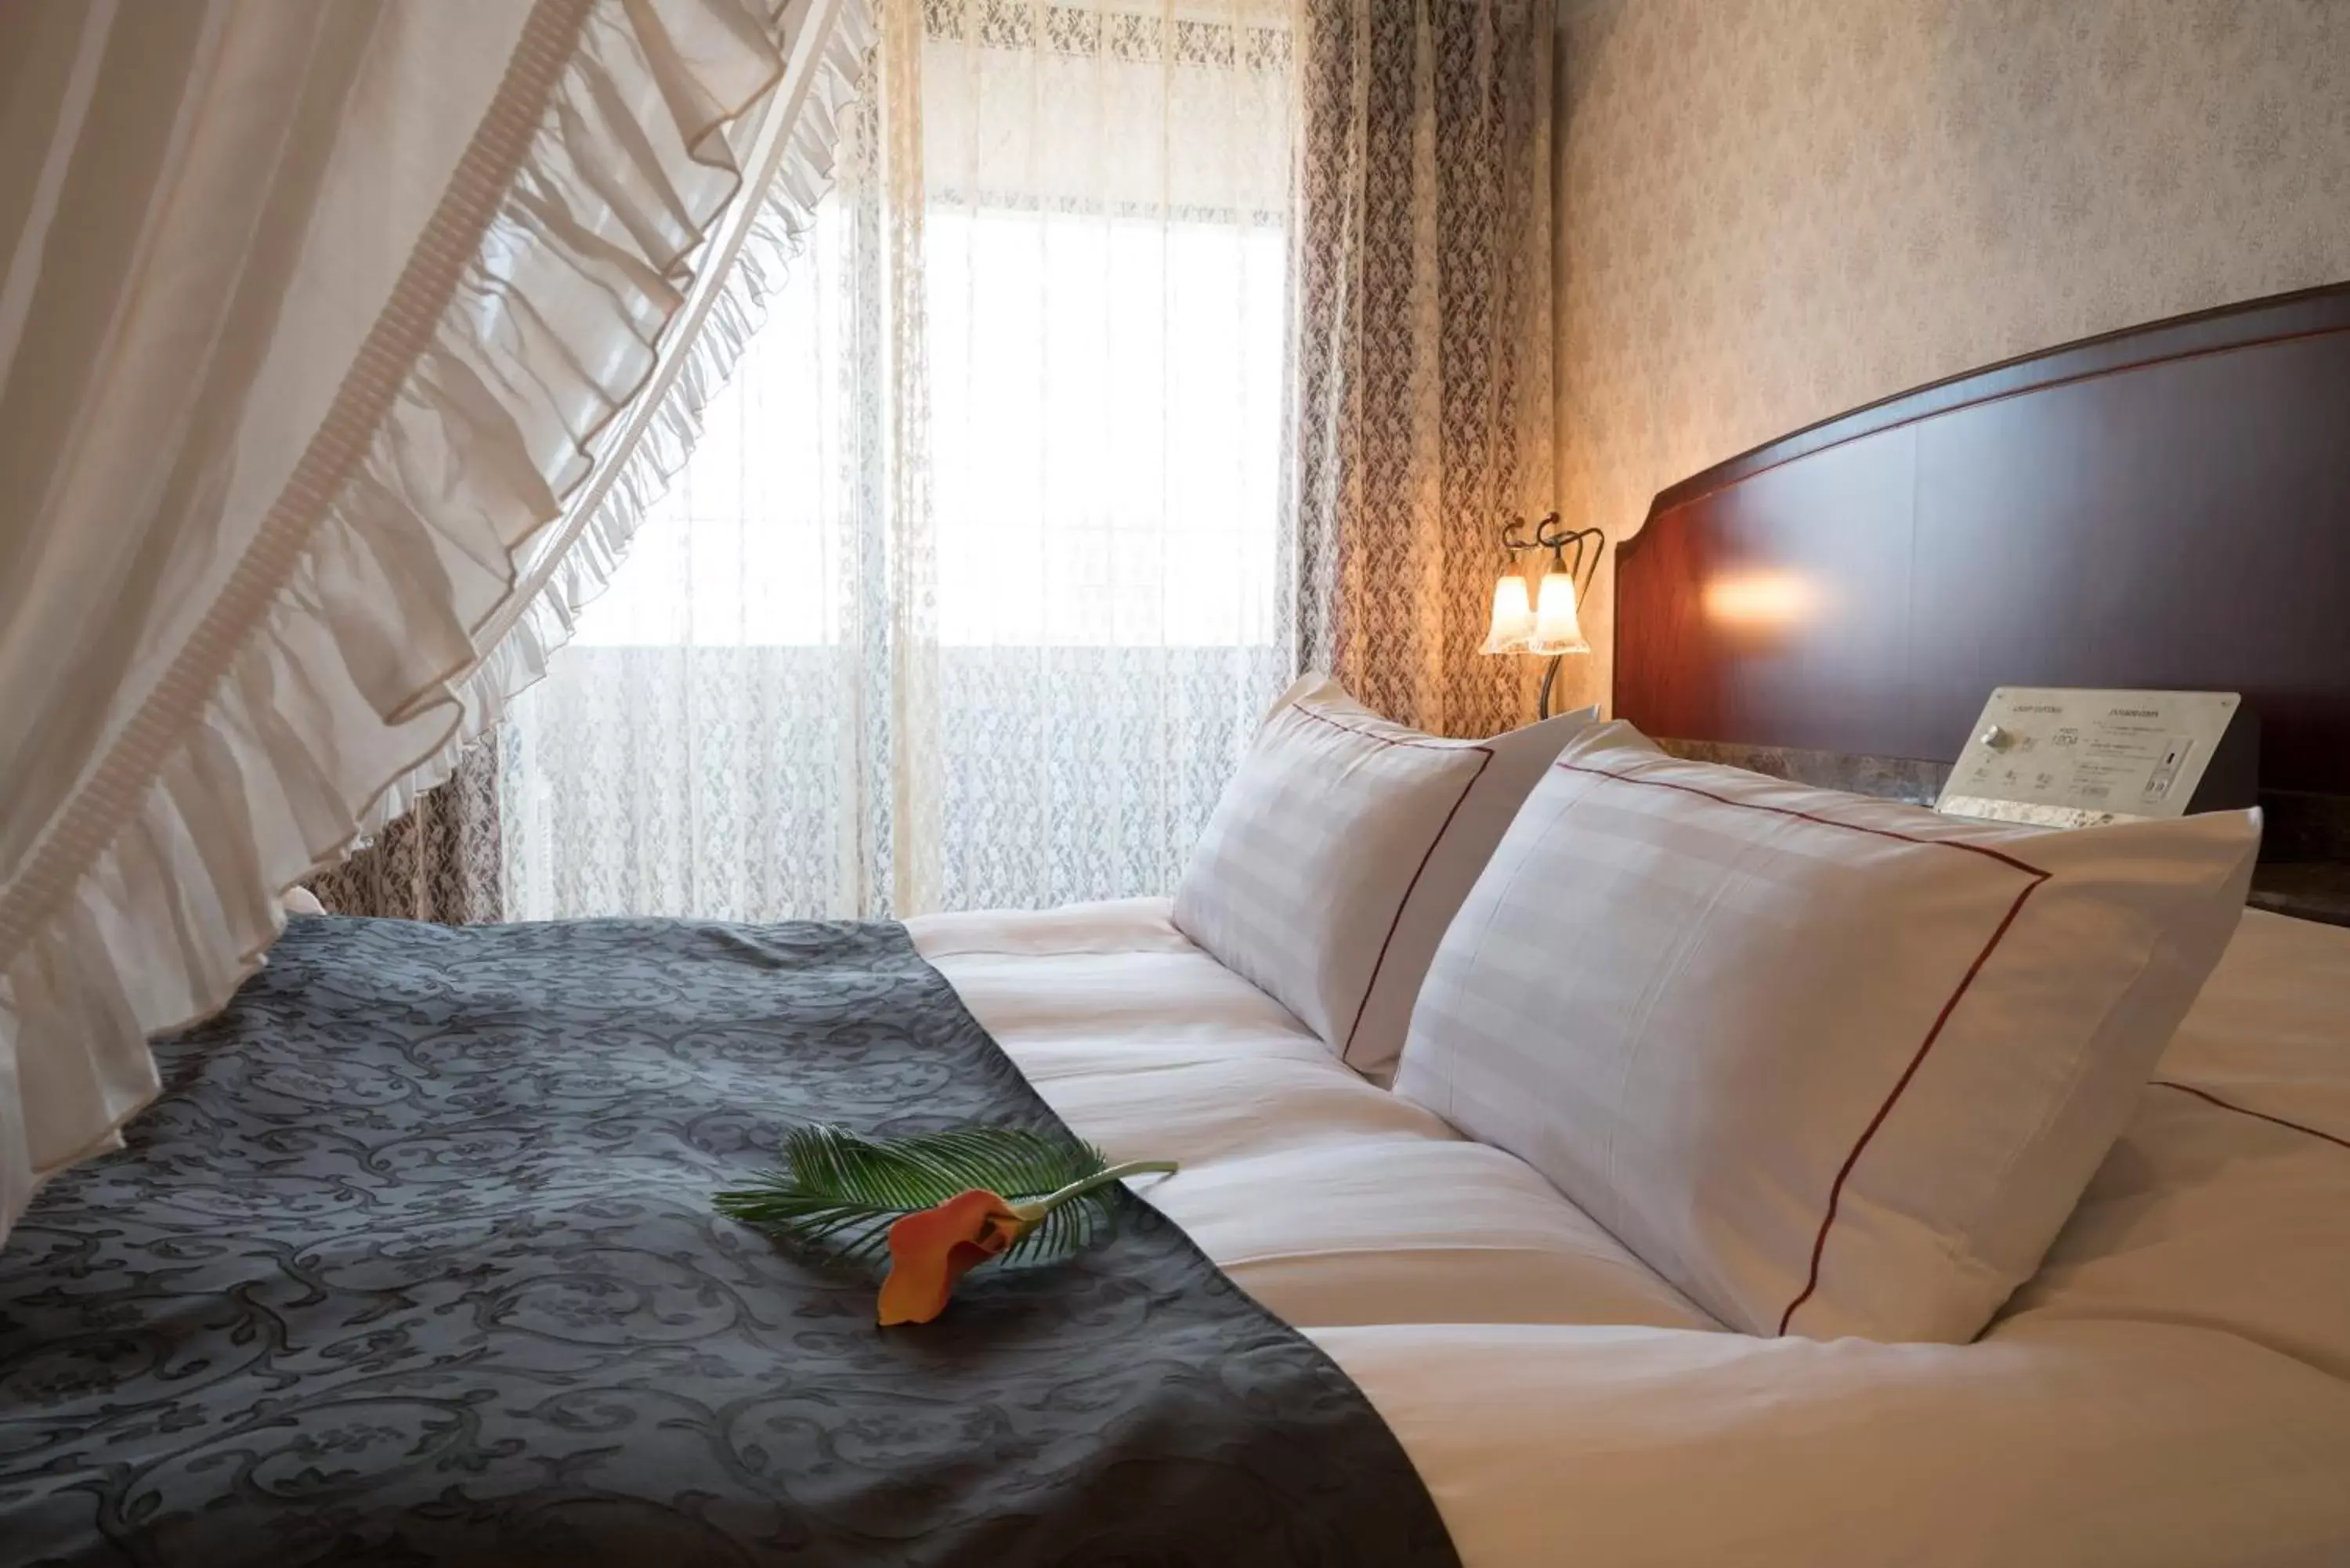 Bedroom, Room Photo in Hotel Alps